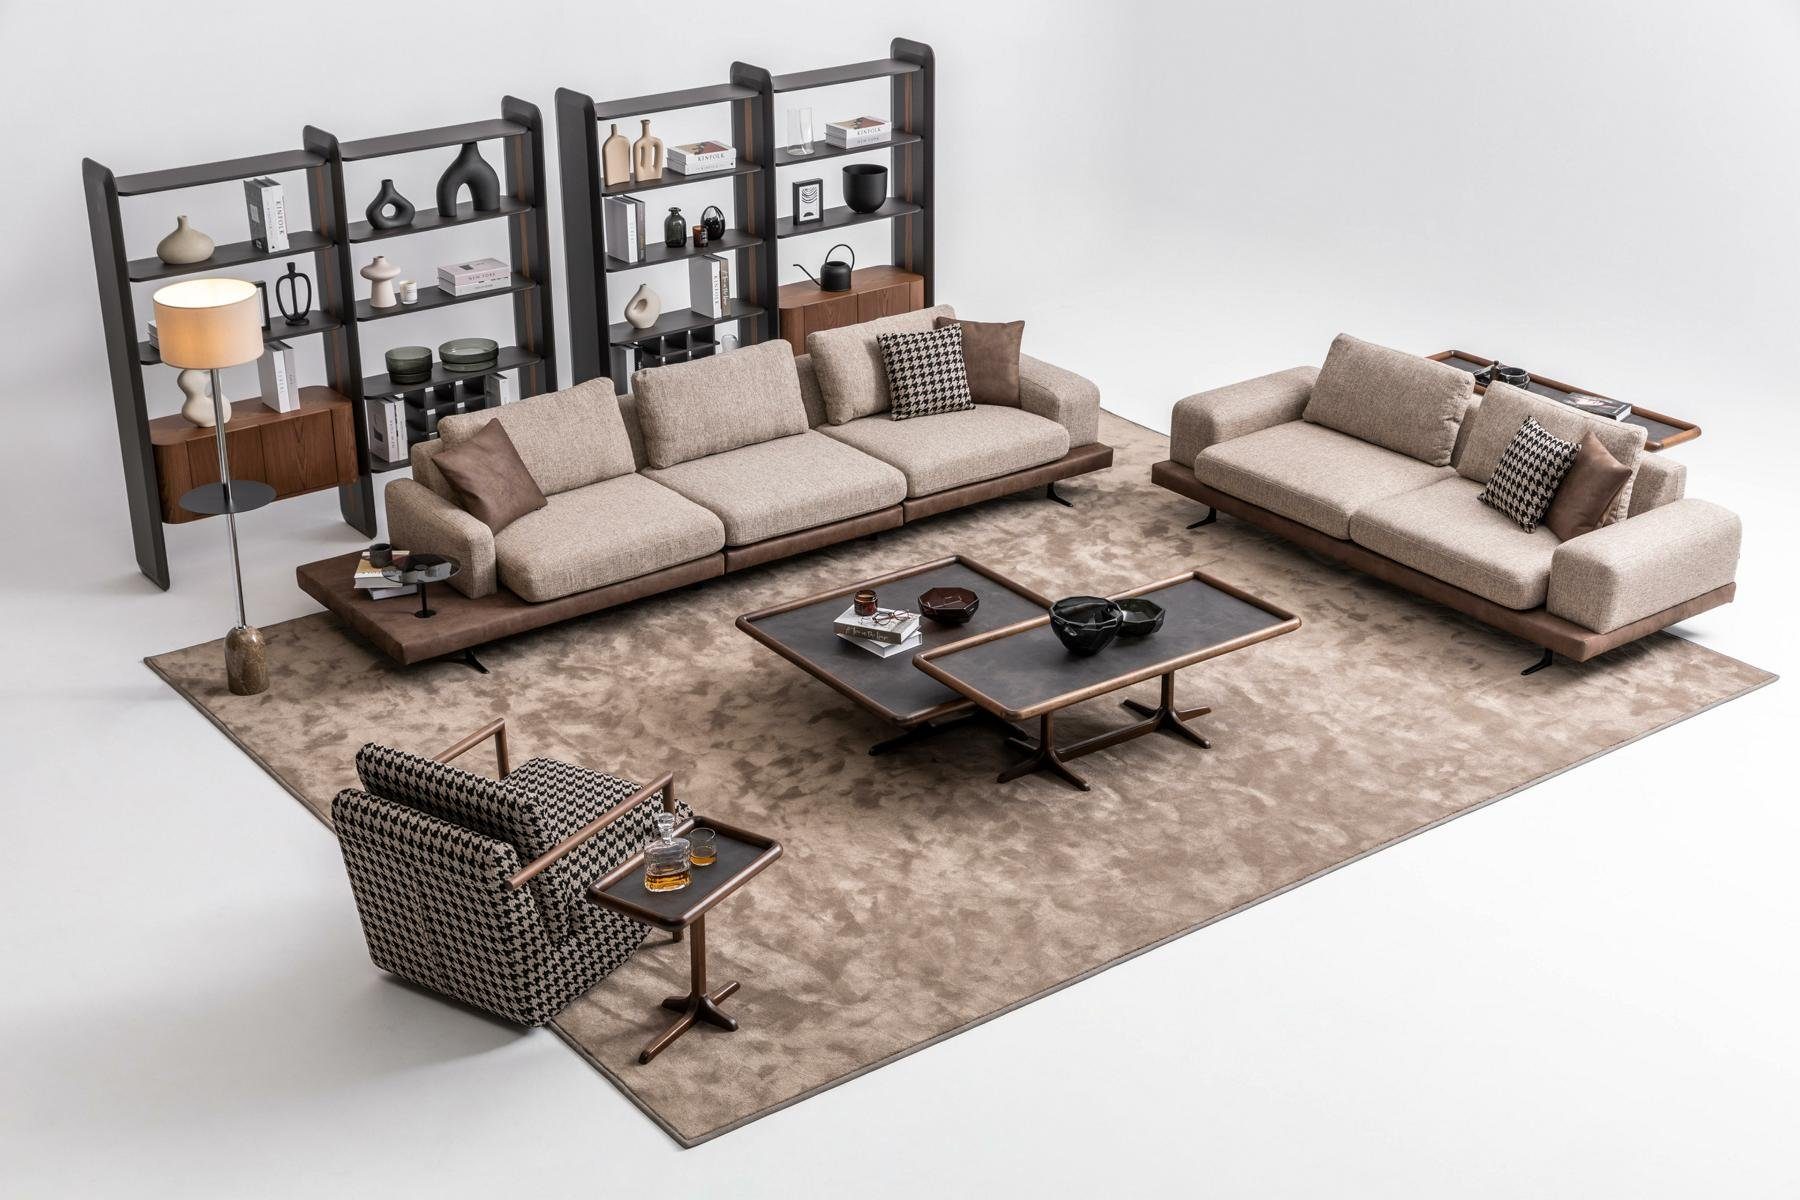 JVmoebel Wohnzimmer-Set Beige Textil Sofa Set Wohnzimmer Couche Dreisitzer Luxus, (Nur Sofa 5+3 Sitzer + Sessel), Made in Europe